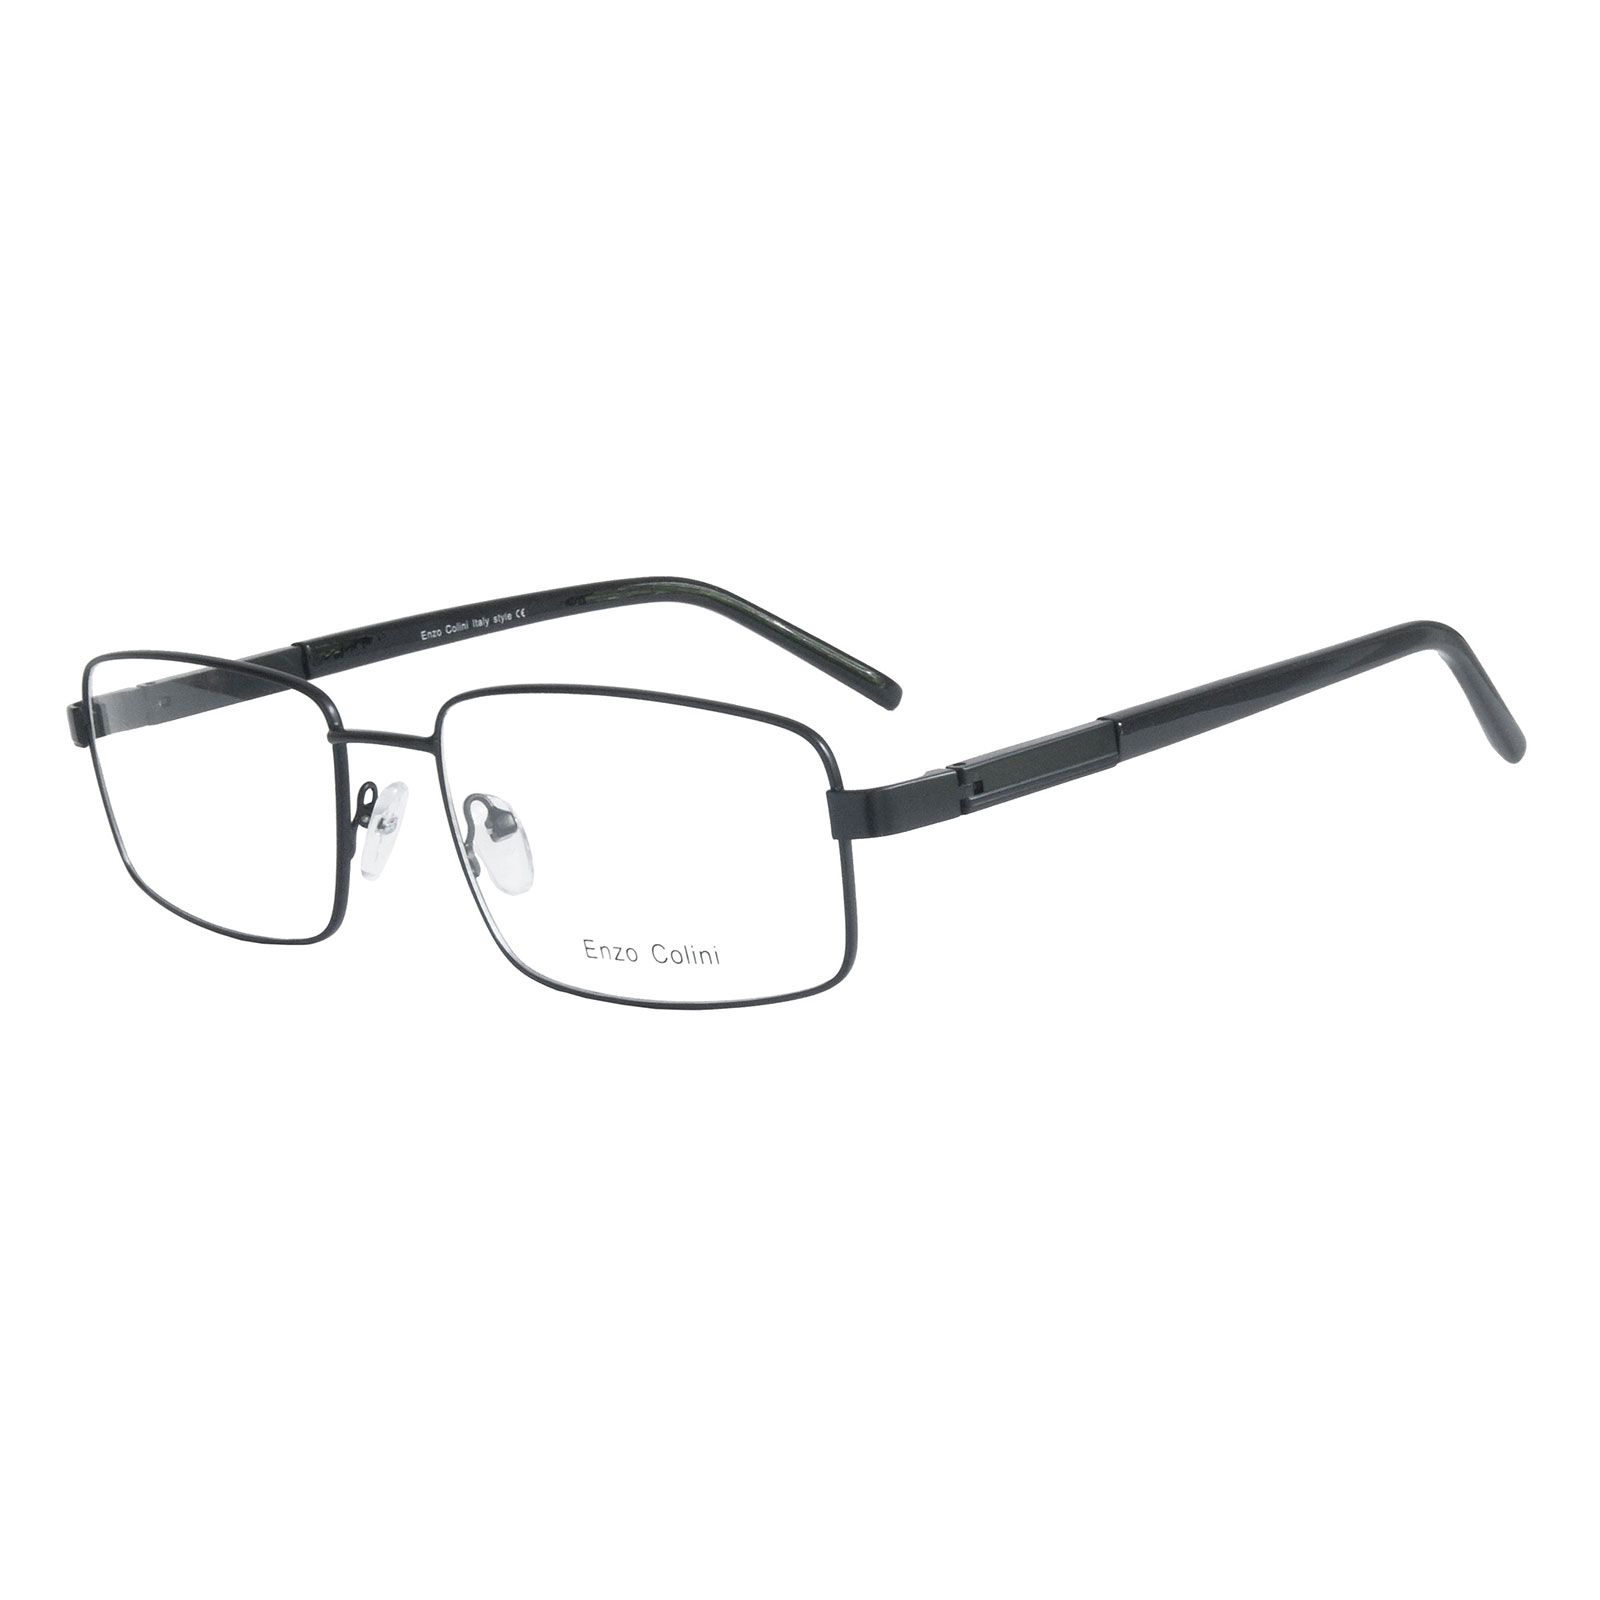 Oprawki okularowe Enzo Colini P510C01